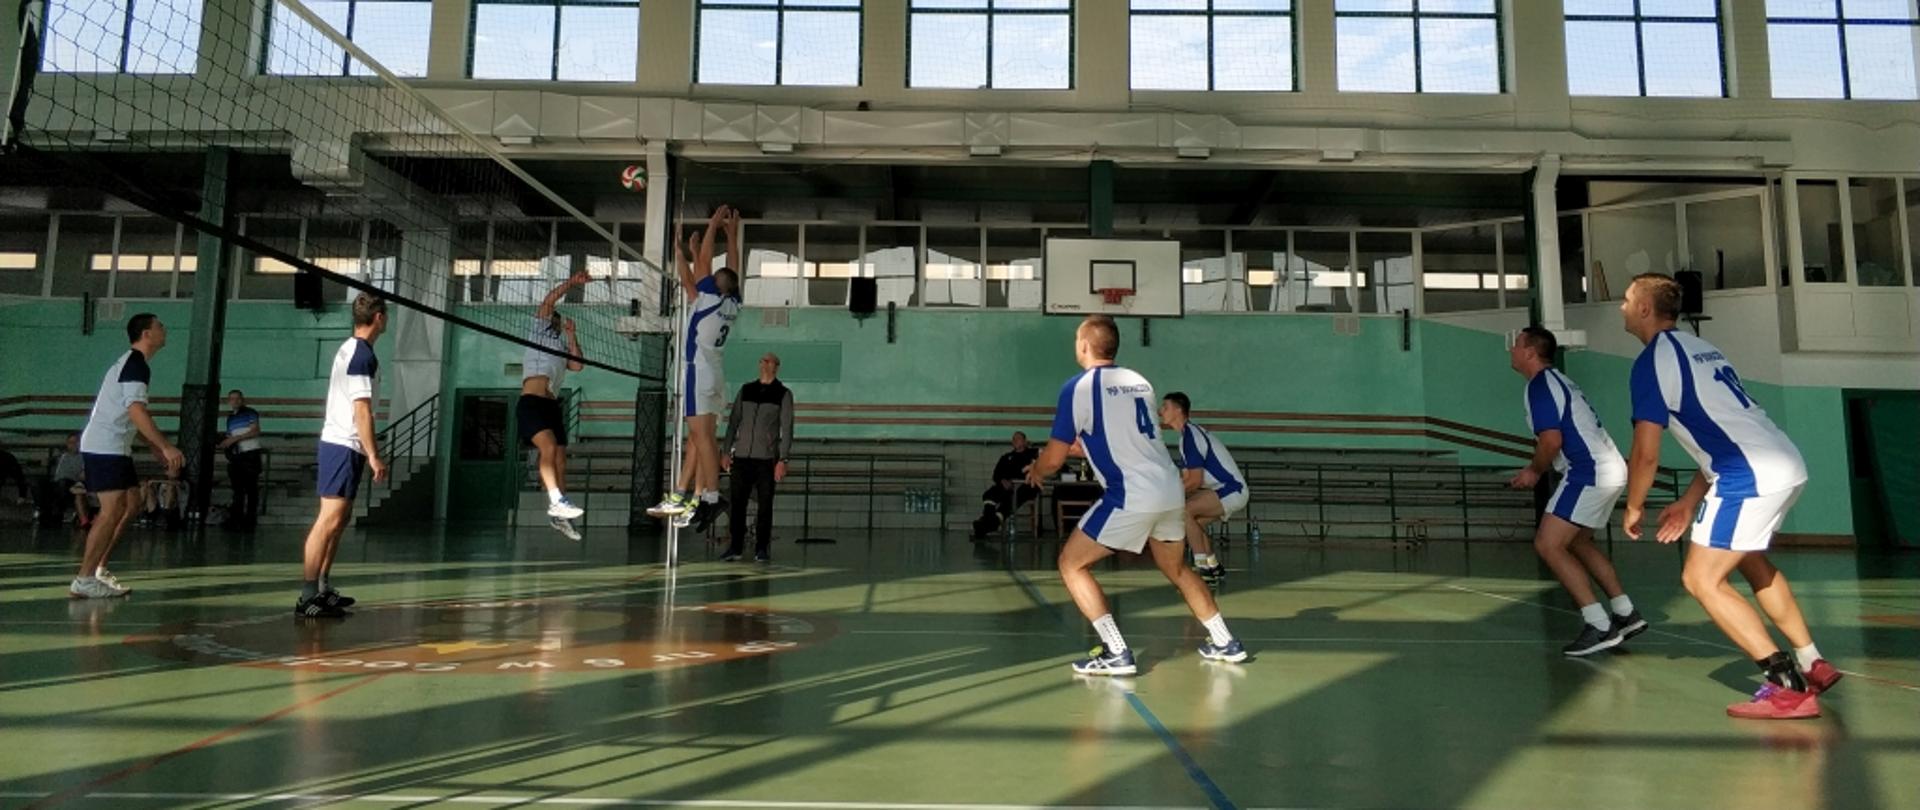 Zawodnicy w biało-niebieskich stronach podczas gry w siatkówkę w hali gimnastycznej, na zielonej nawierzchni. Przy siatce kilku wyskakuje do zablokowania piłki, zawodnik drużyny przeciwnej atakuje.